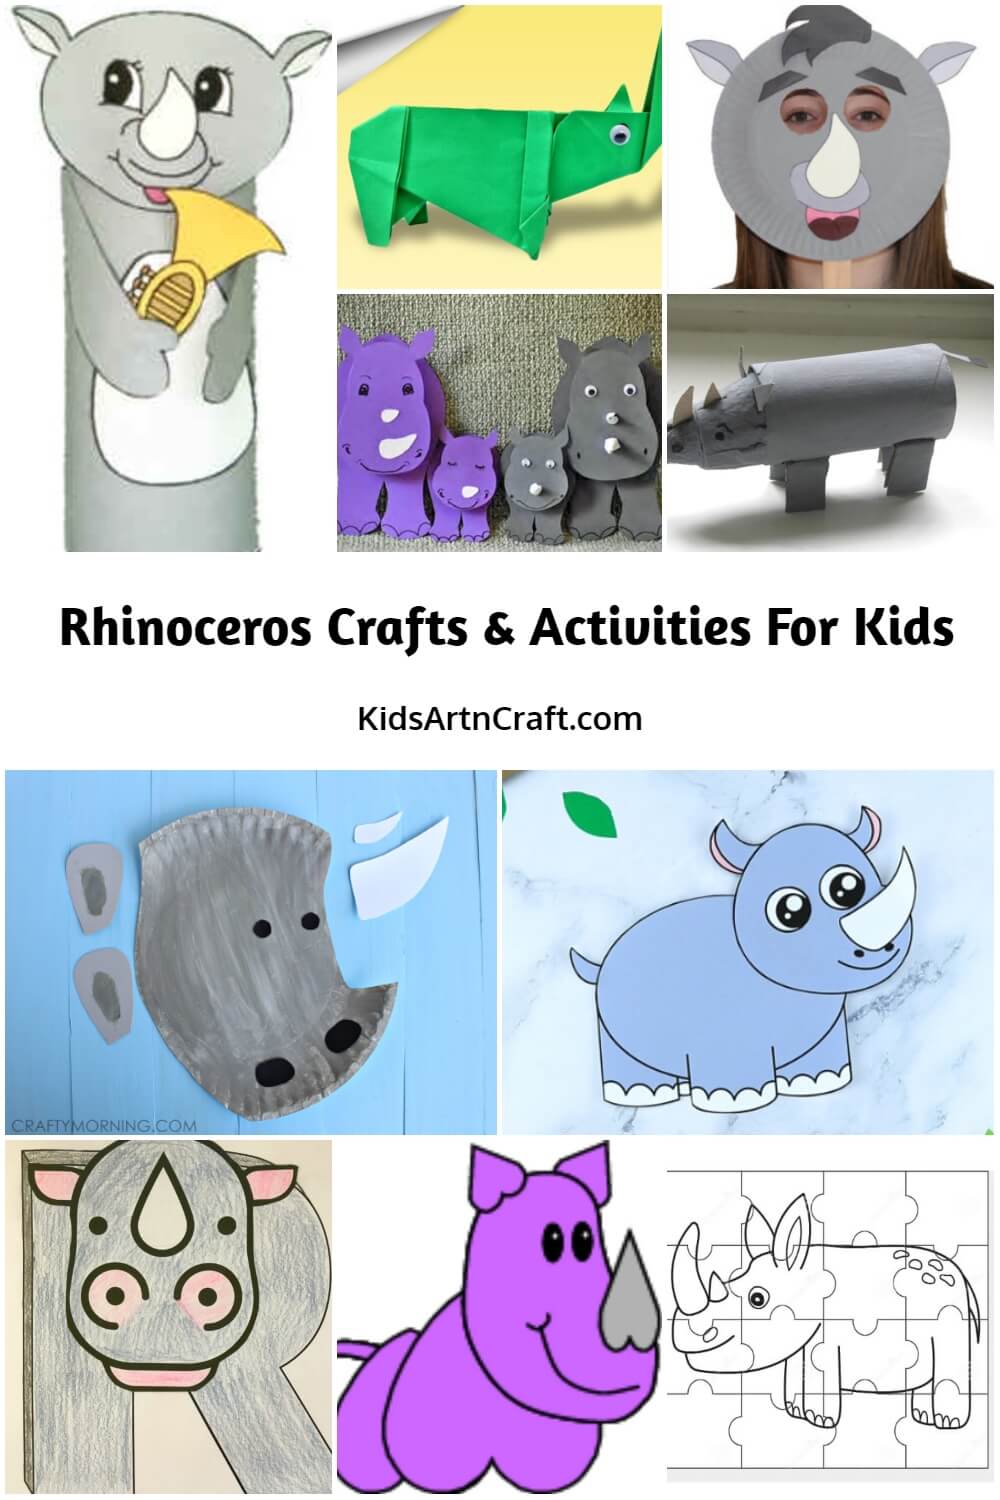 Rhinoceros Crafts & Activities for Kids